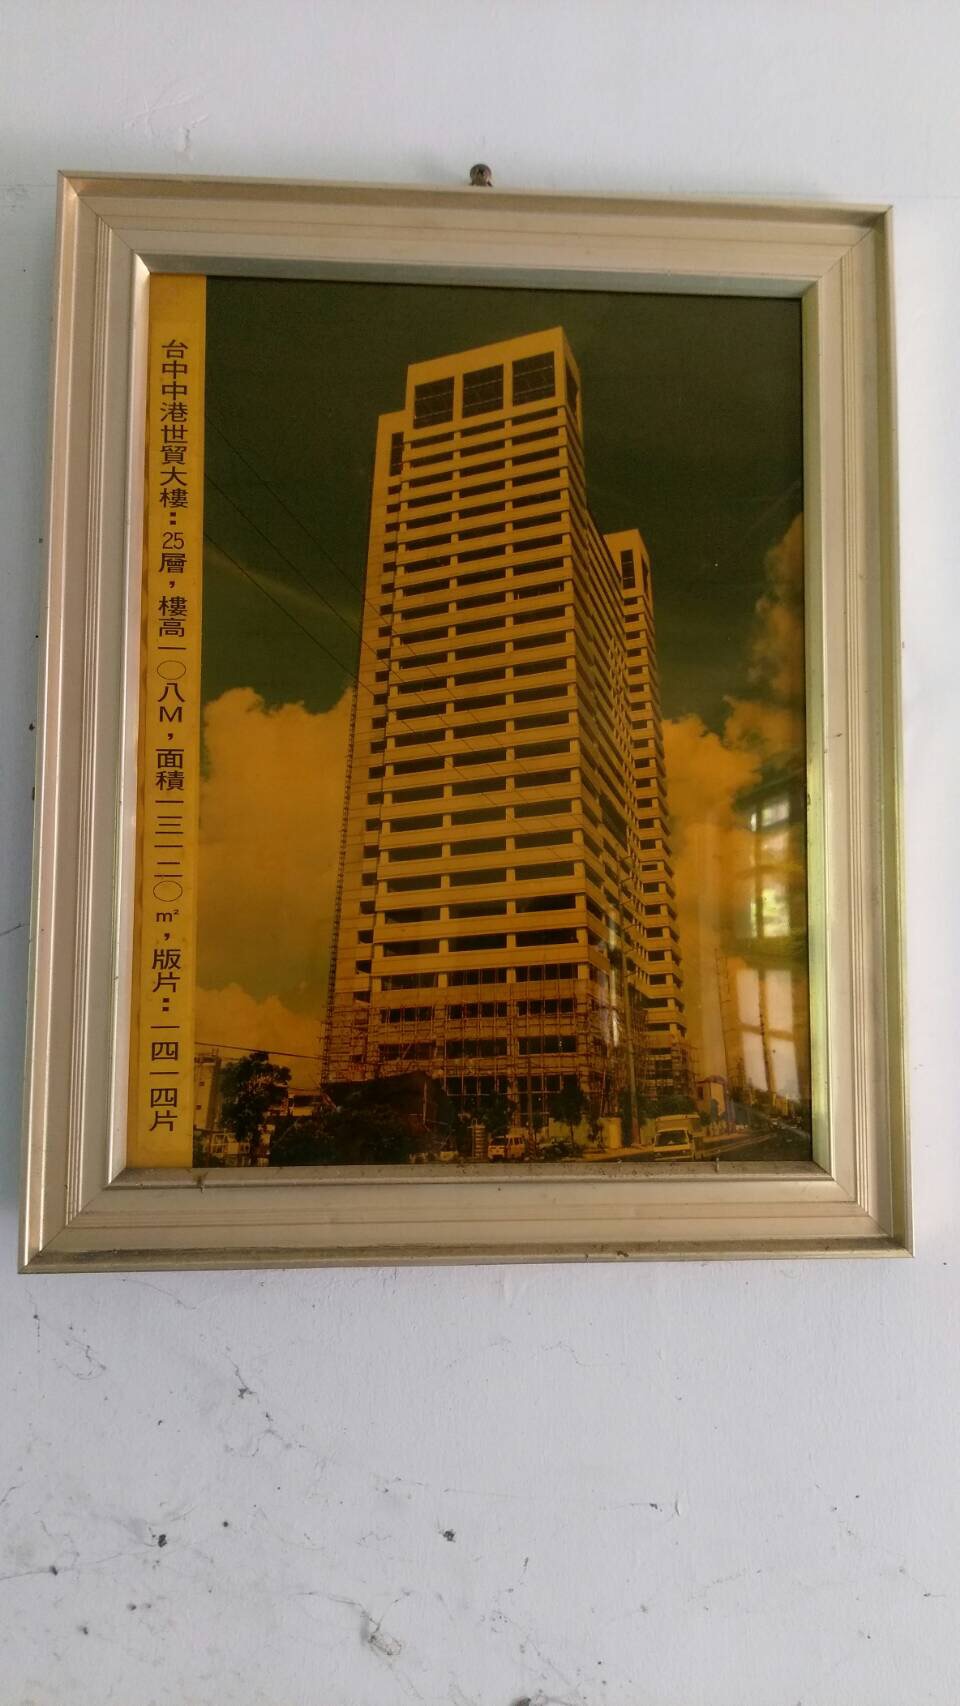 中港世貿天下大樓(裱框照)